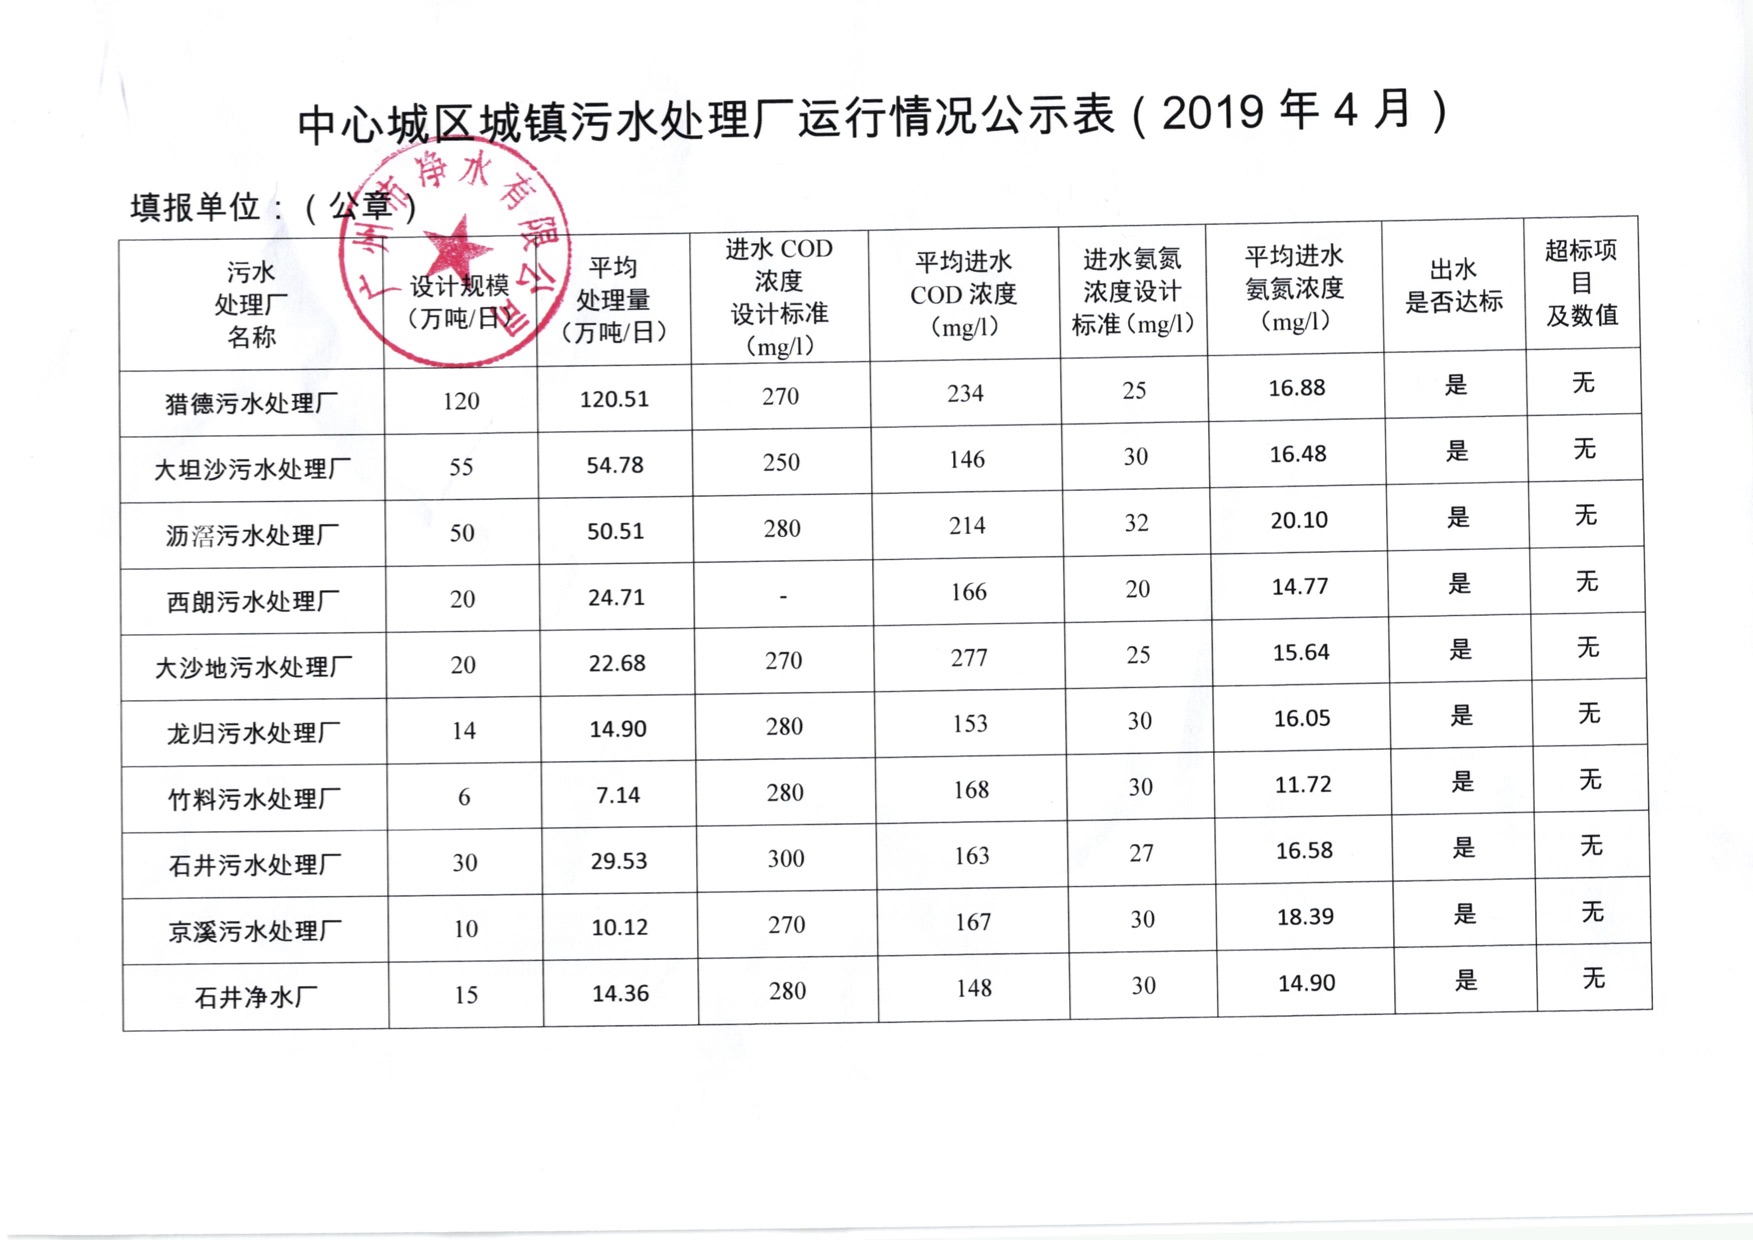 中心城区城镇污水处理厂运行情况公示表（2019年4月）.jpg